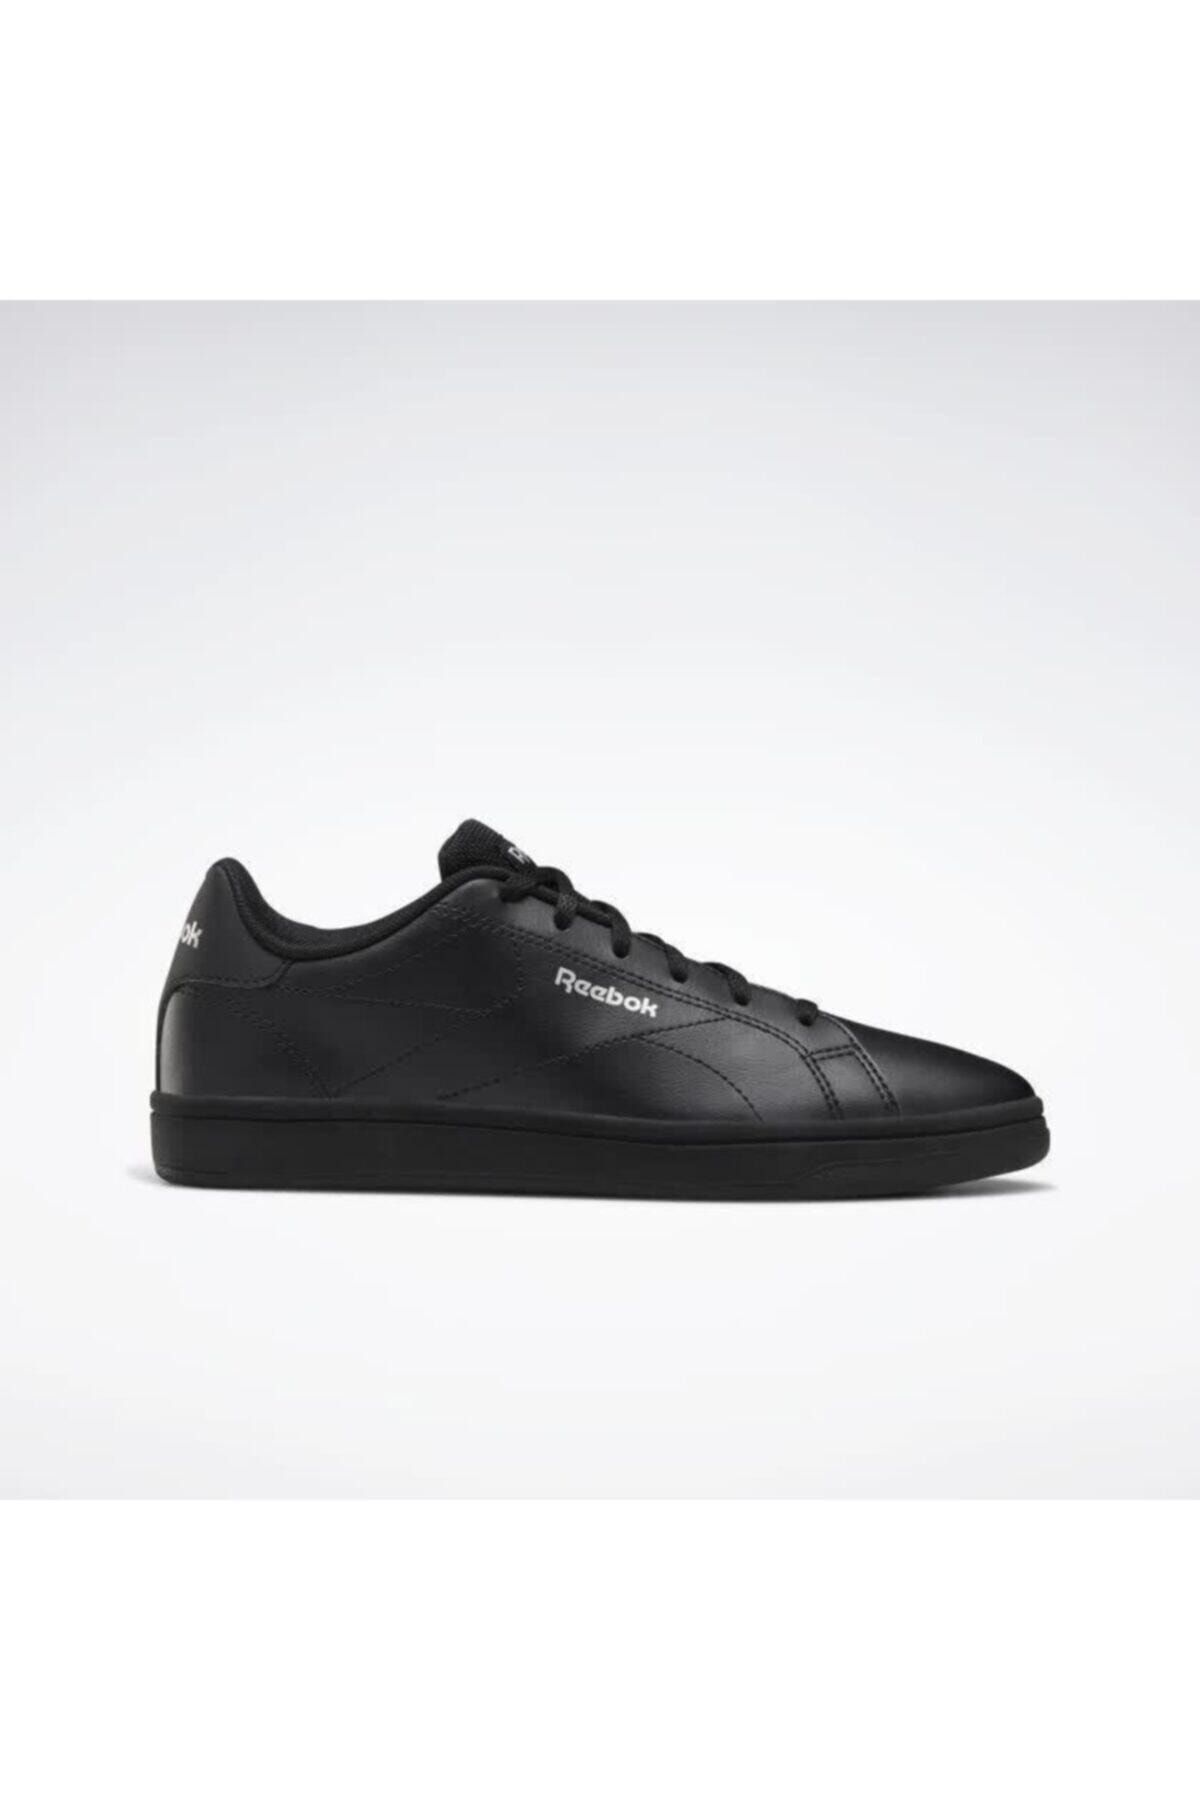 Reebok ROYAL COMPLE Siyah Kadın Sneaker Ayakkabı 100539048